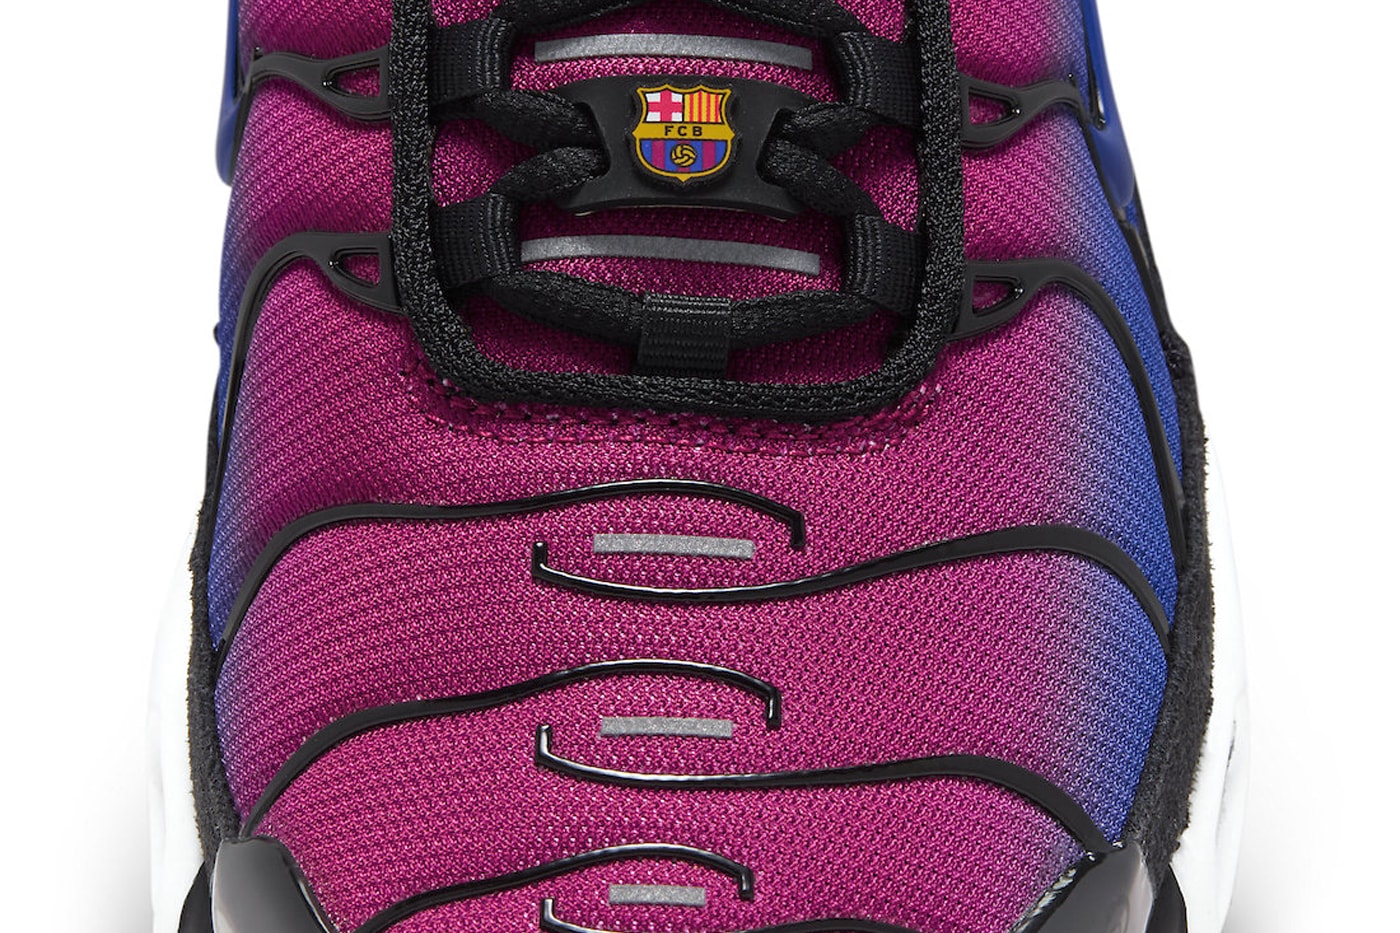 ナイキxパタxFCバルセロナによるコラボエアマックスプラス“FCバルセロナ”が登場 Patta x Nike Air Max Plus "FC Barcelona" Set To Arrive This Holiday Season FN8260-001 Rush Fuchsia/Deep Royal Blue-Black-White sneaker technical shoe